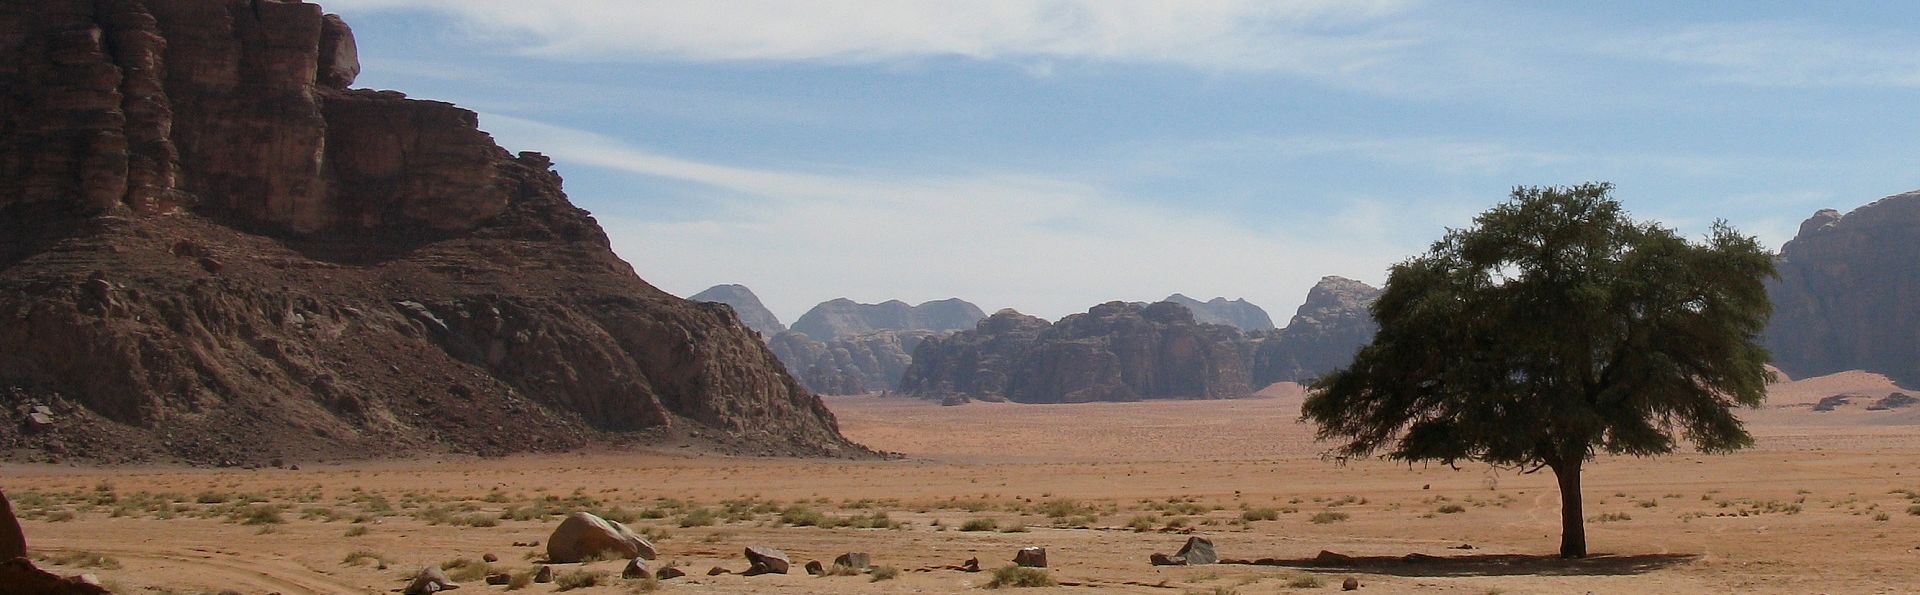 Wadi Rum Desert Jordan 